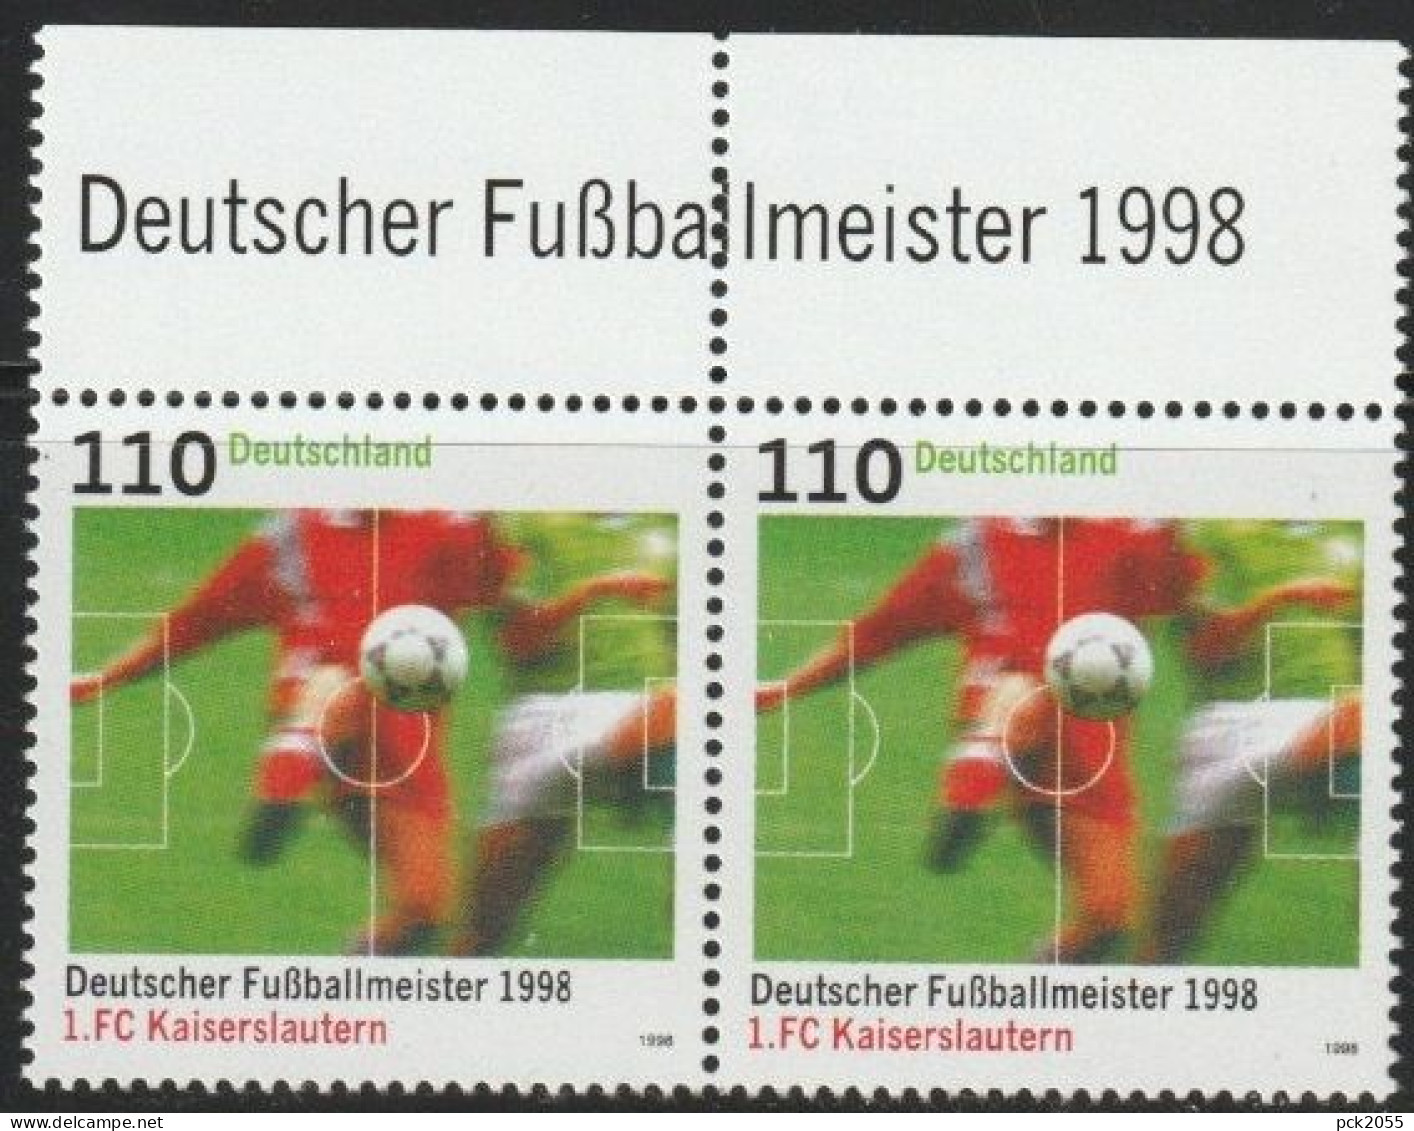 BRD 1998 MiNr.2010 ** Postfrisch Deutscher Fußballmeister 1.FC Kaiserslautern ( A4310 )günstige Versandkosten - Ungebraucht